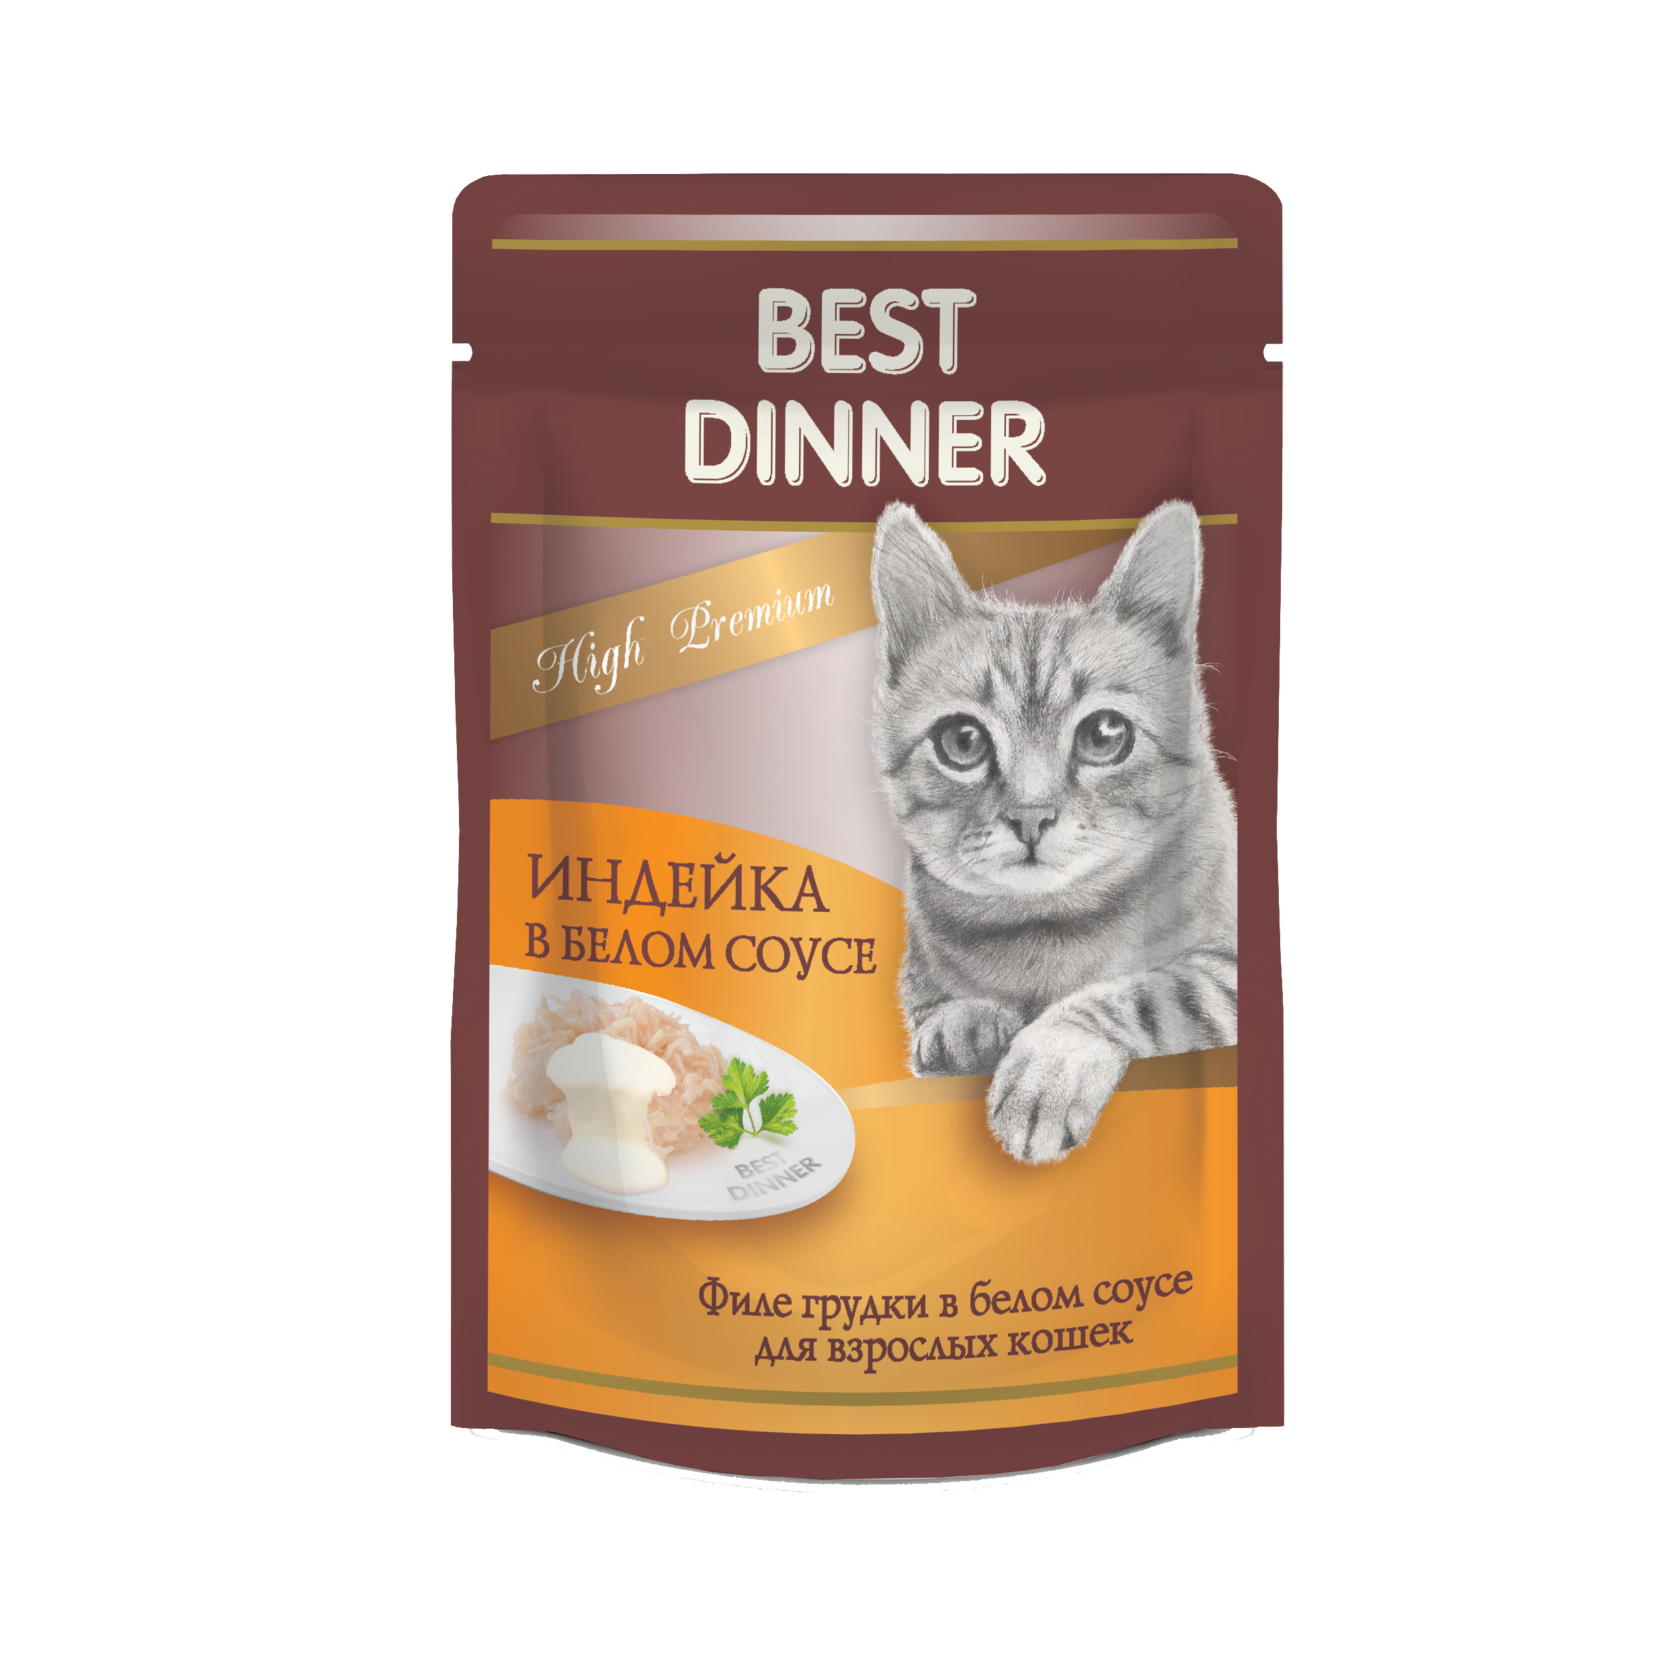 Best Dinner High Premium Пауч индейка в белом соусе 85г для кошек фото, цены, купить